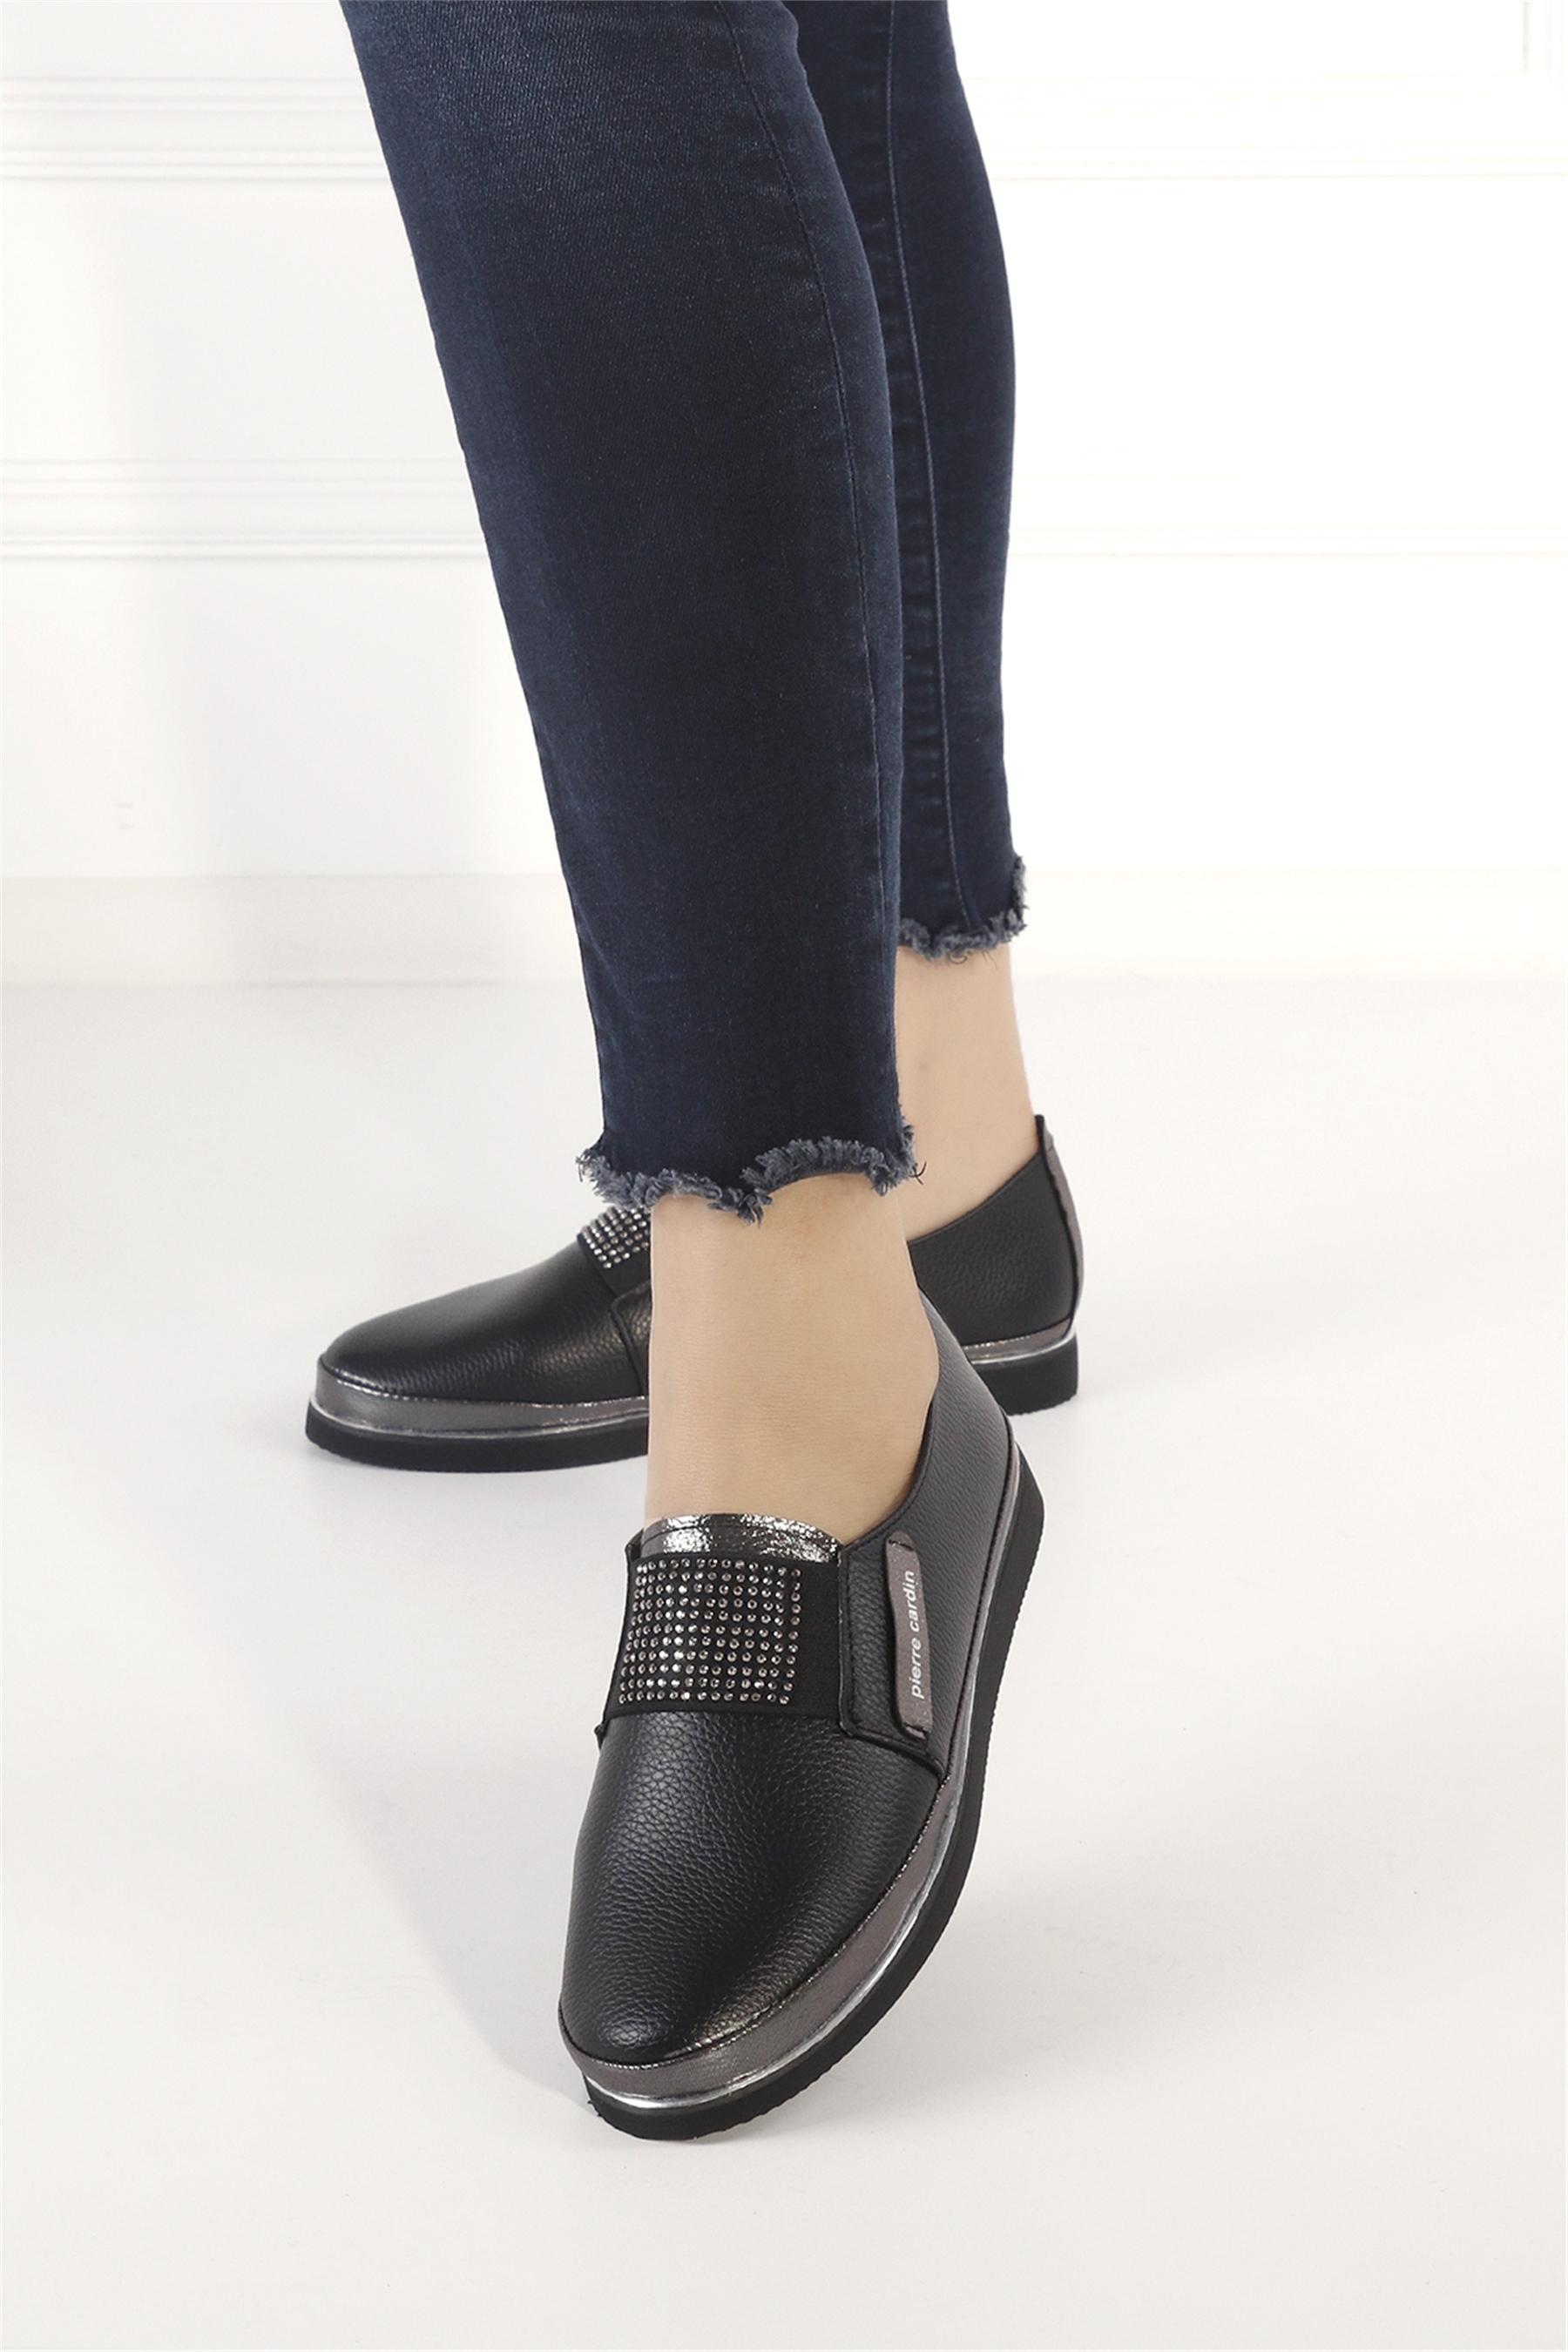 Pierre Cardin PC-51678C Kadın Günlük Ayakkabı Siyah - Ayakkabı Fuarı Elit